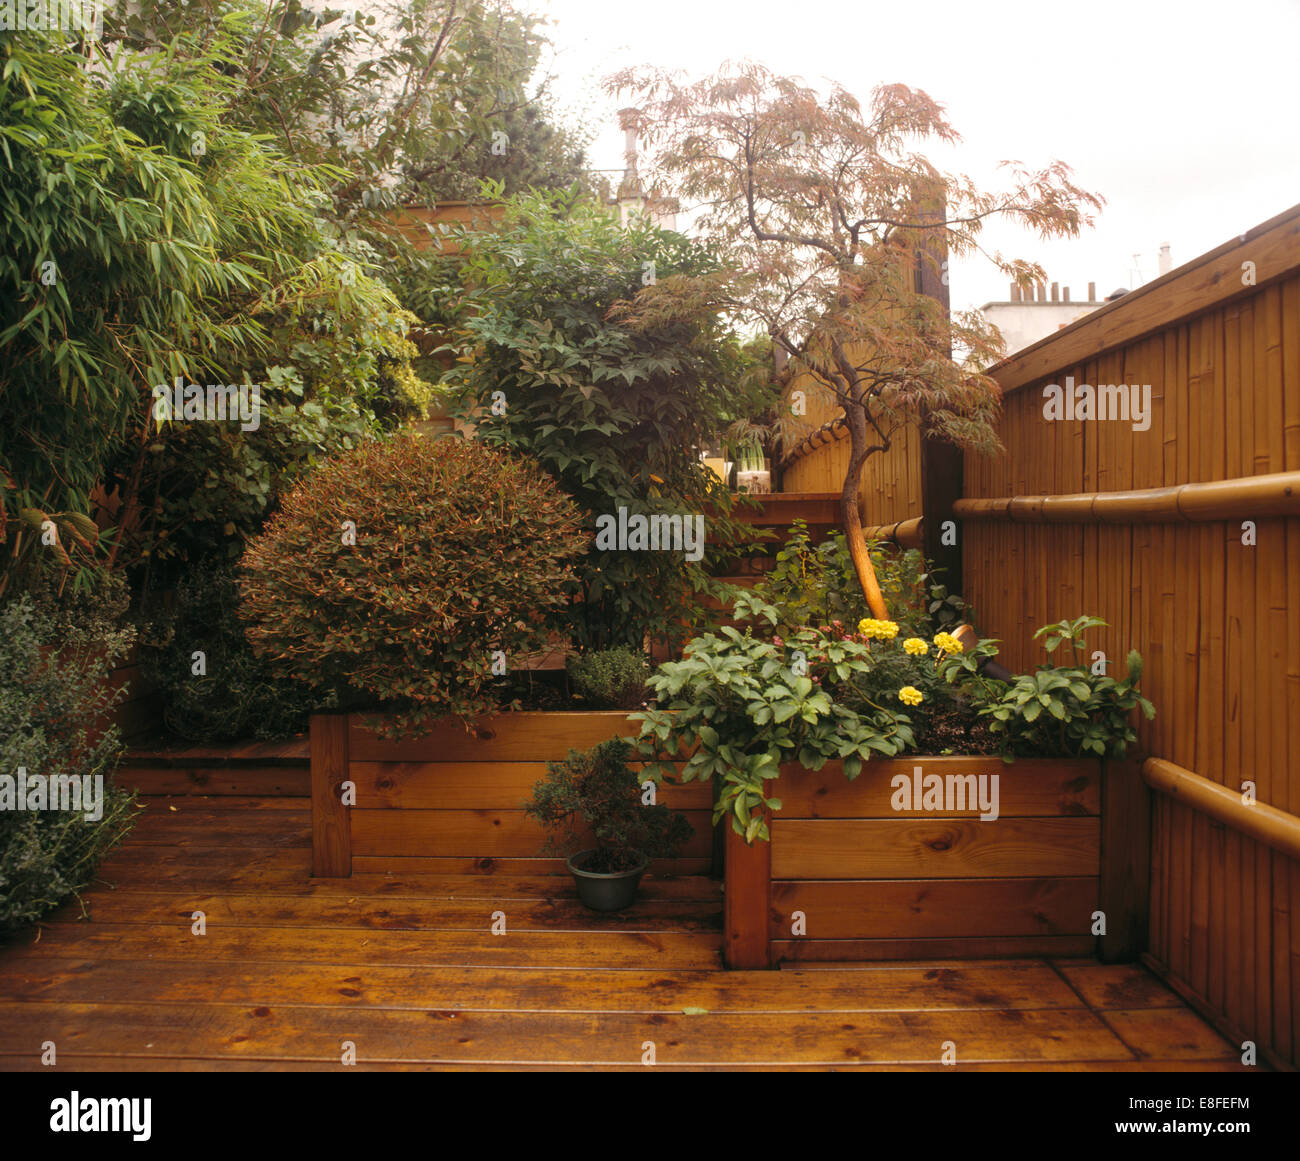 Decorazioni da giardino immagini e fotografie stock ad alta risoluzione -  Alamy